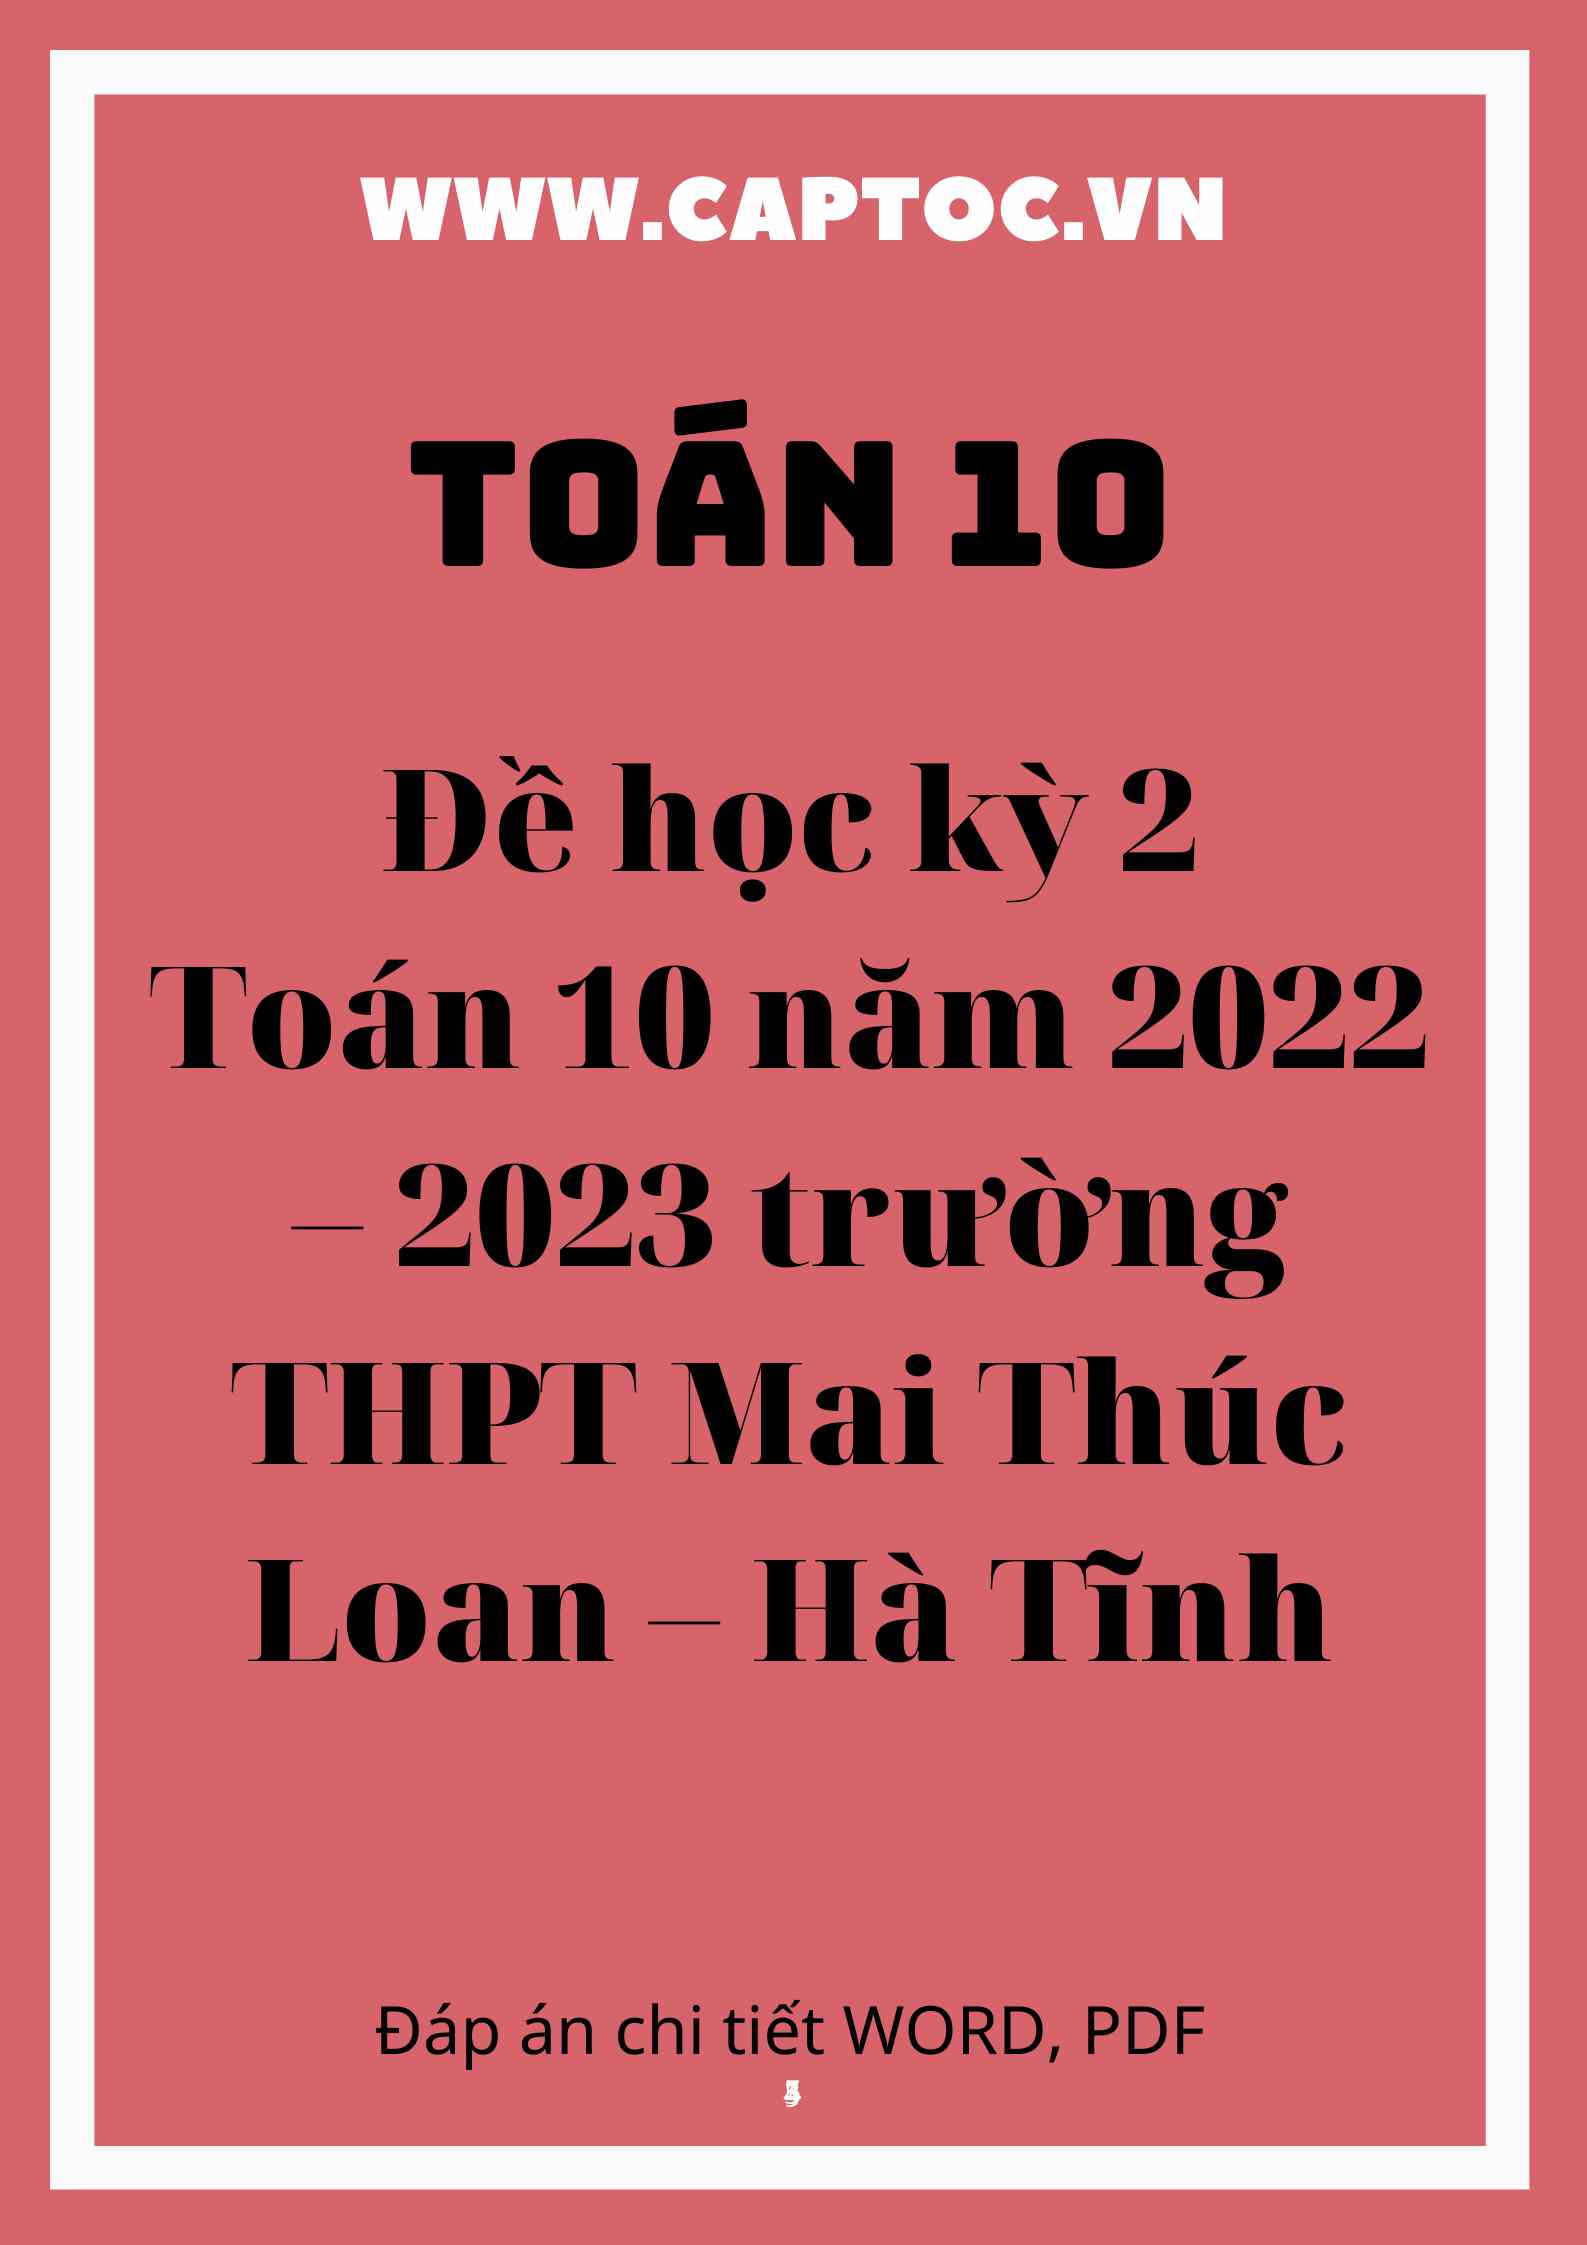 Đề học kỳ 2 Toán 10 năm 2022 – 2023 trường THPT Mai Thúc Loan – Hà Tĩnh